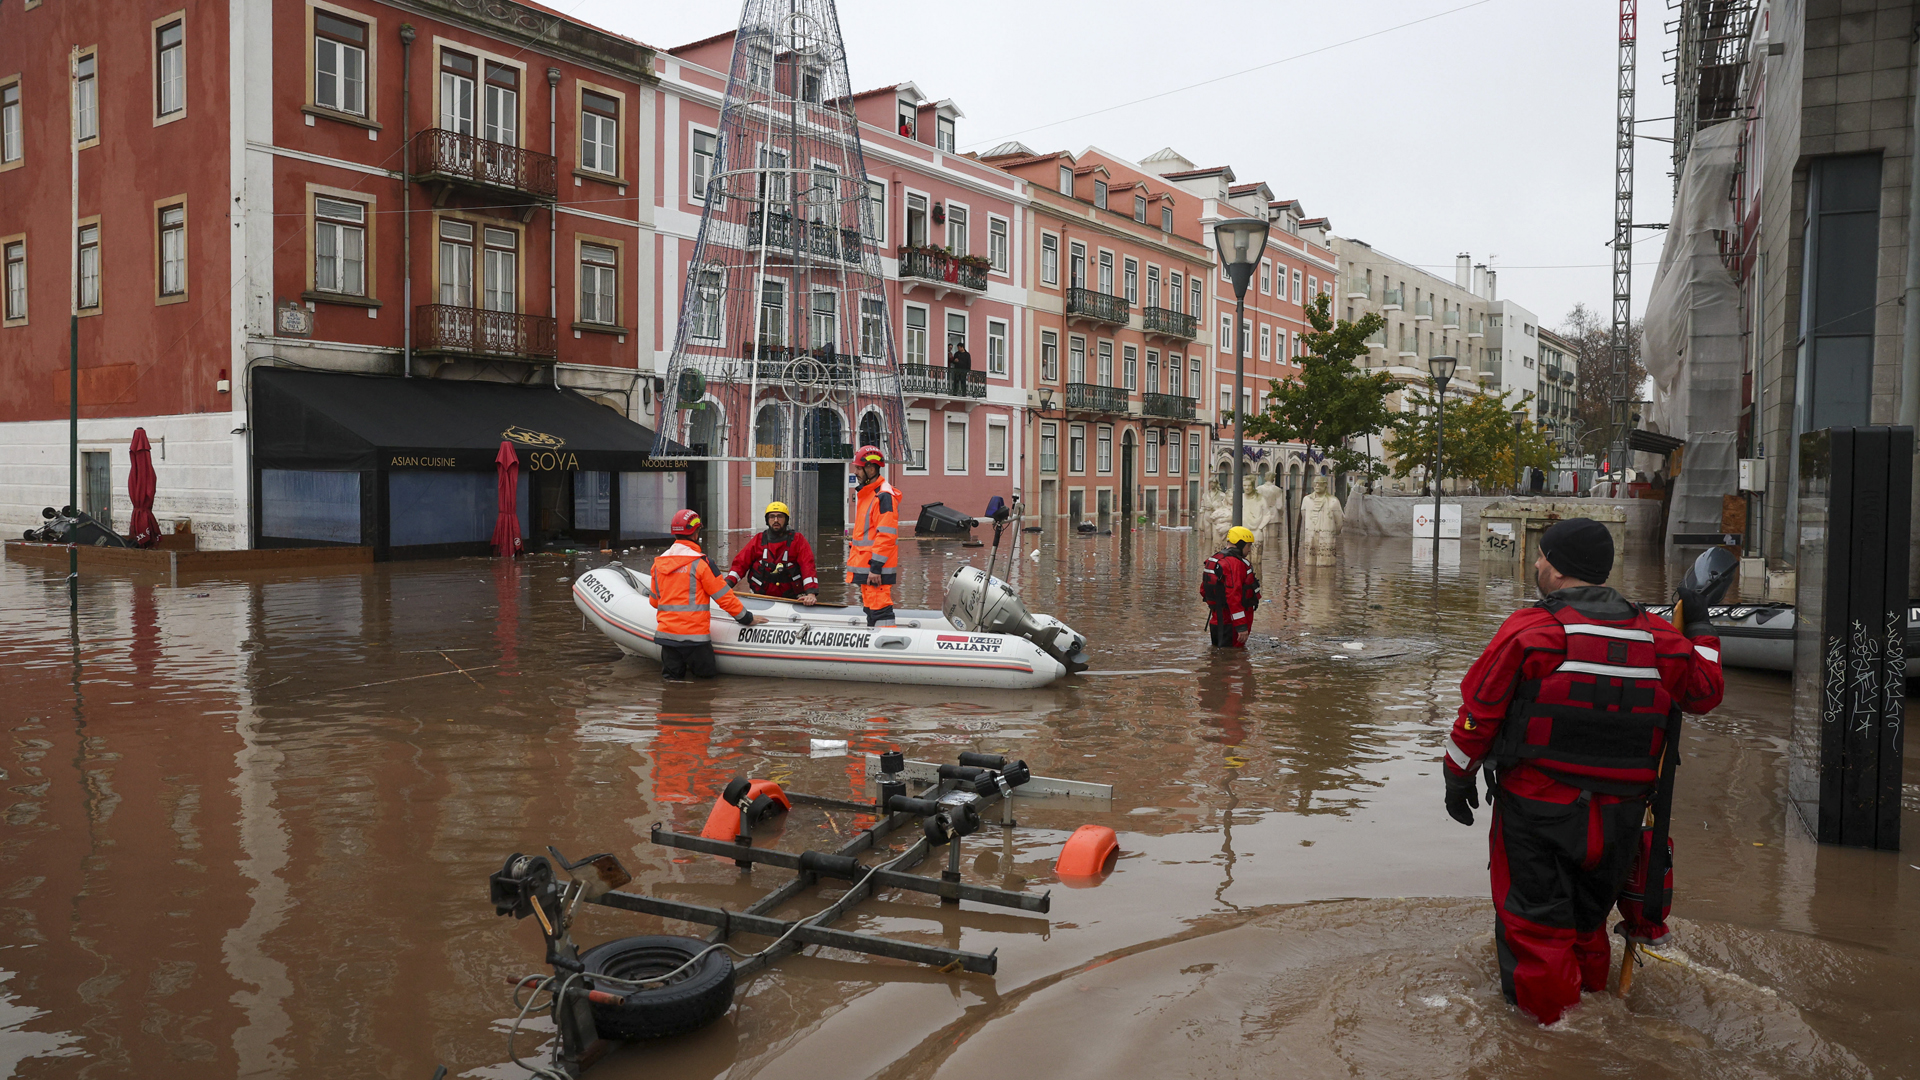 Eine überflutete Straße in Portugals Hauptstadt Lissabon. Einige Menschen mussten mit Booten aus ihren Häusern gerettet werden. | EPA